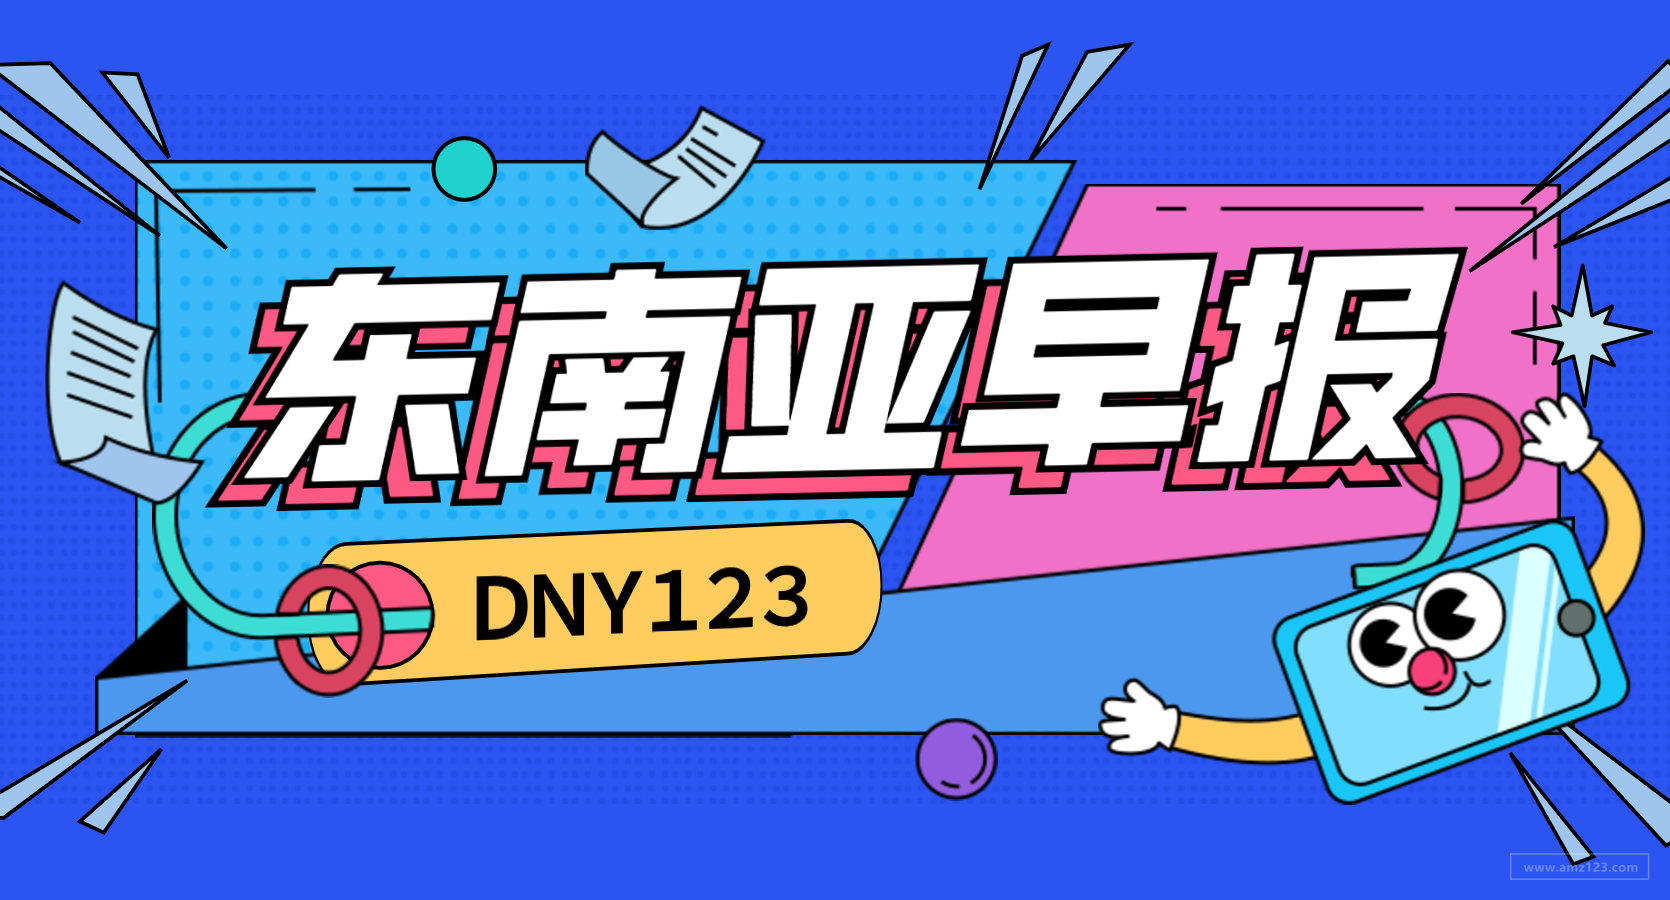 【DNY123跨境早报】东南亚社交电商Webuy获得600万美元融资，京东印尼推出试妆功能